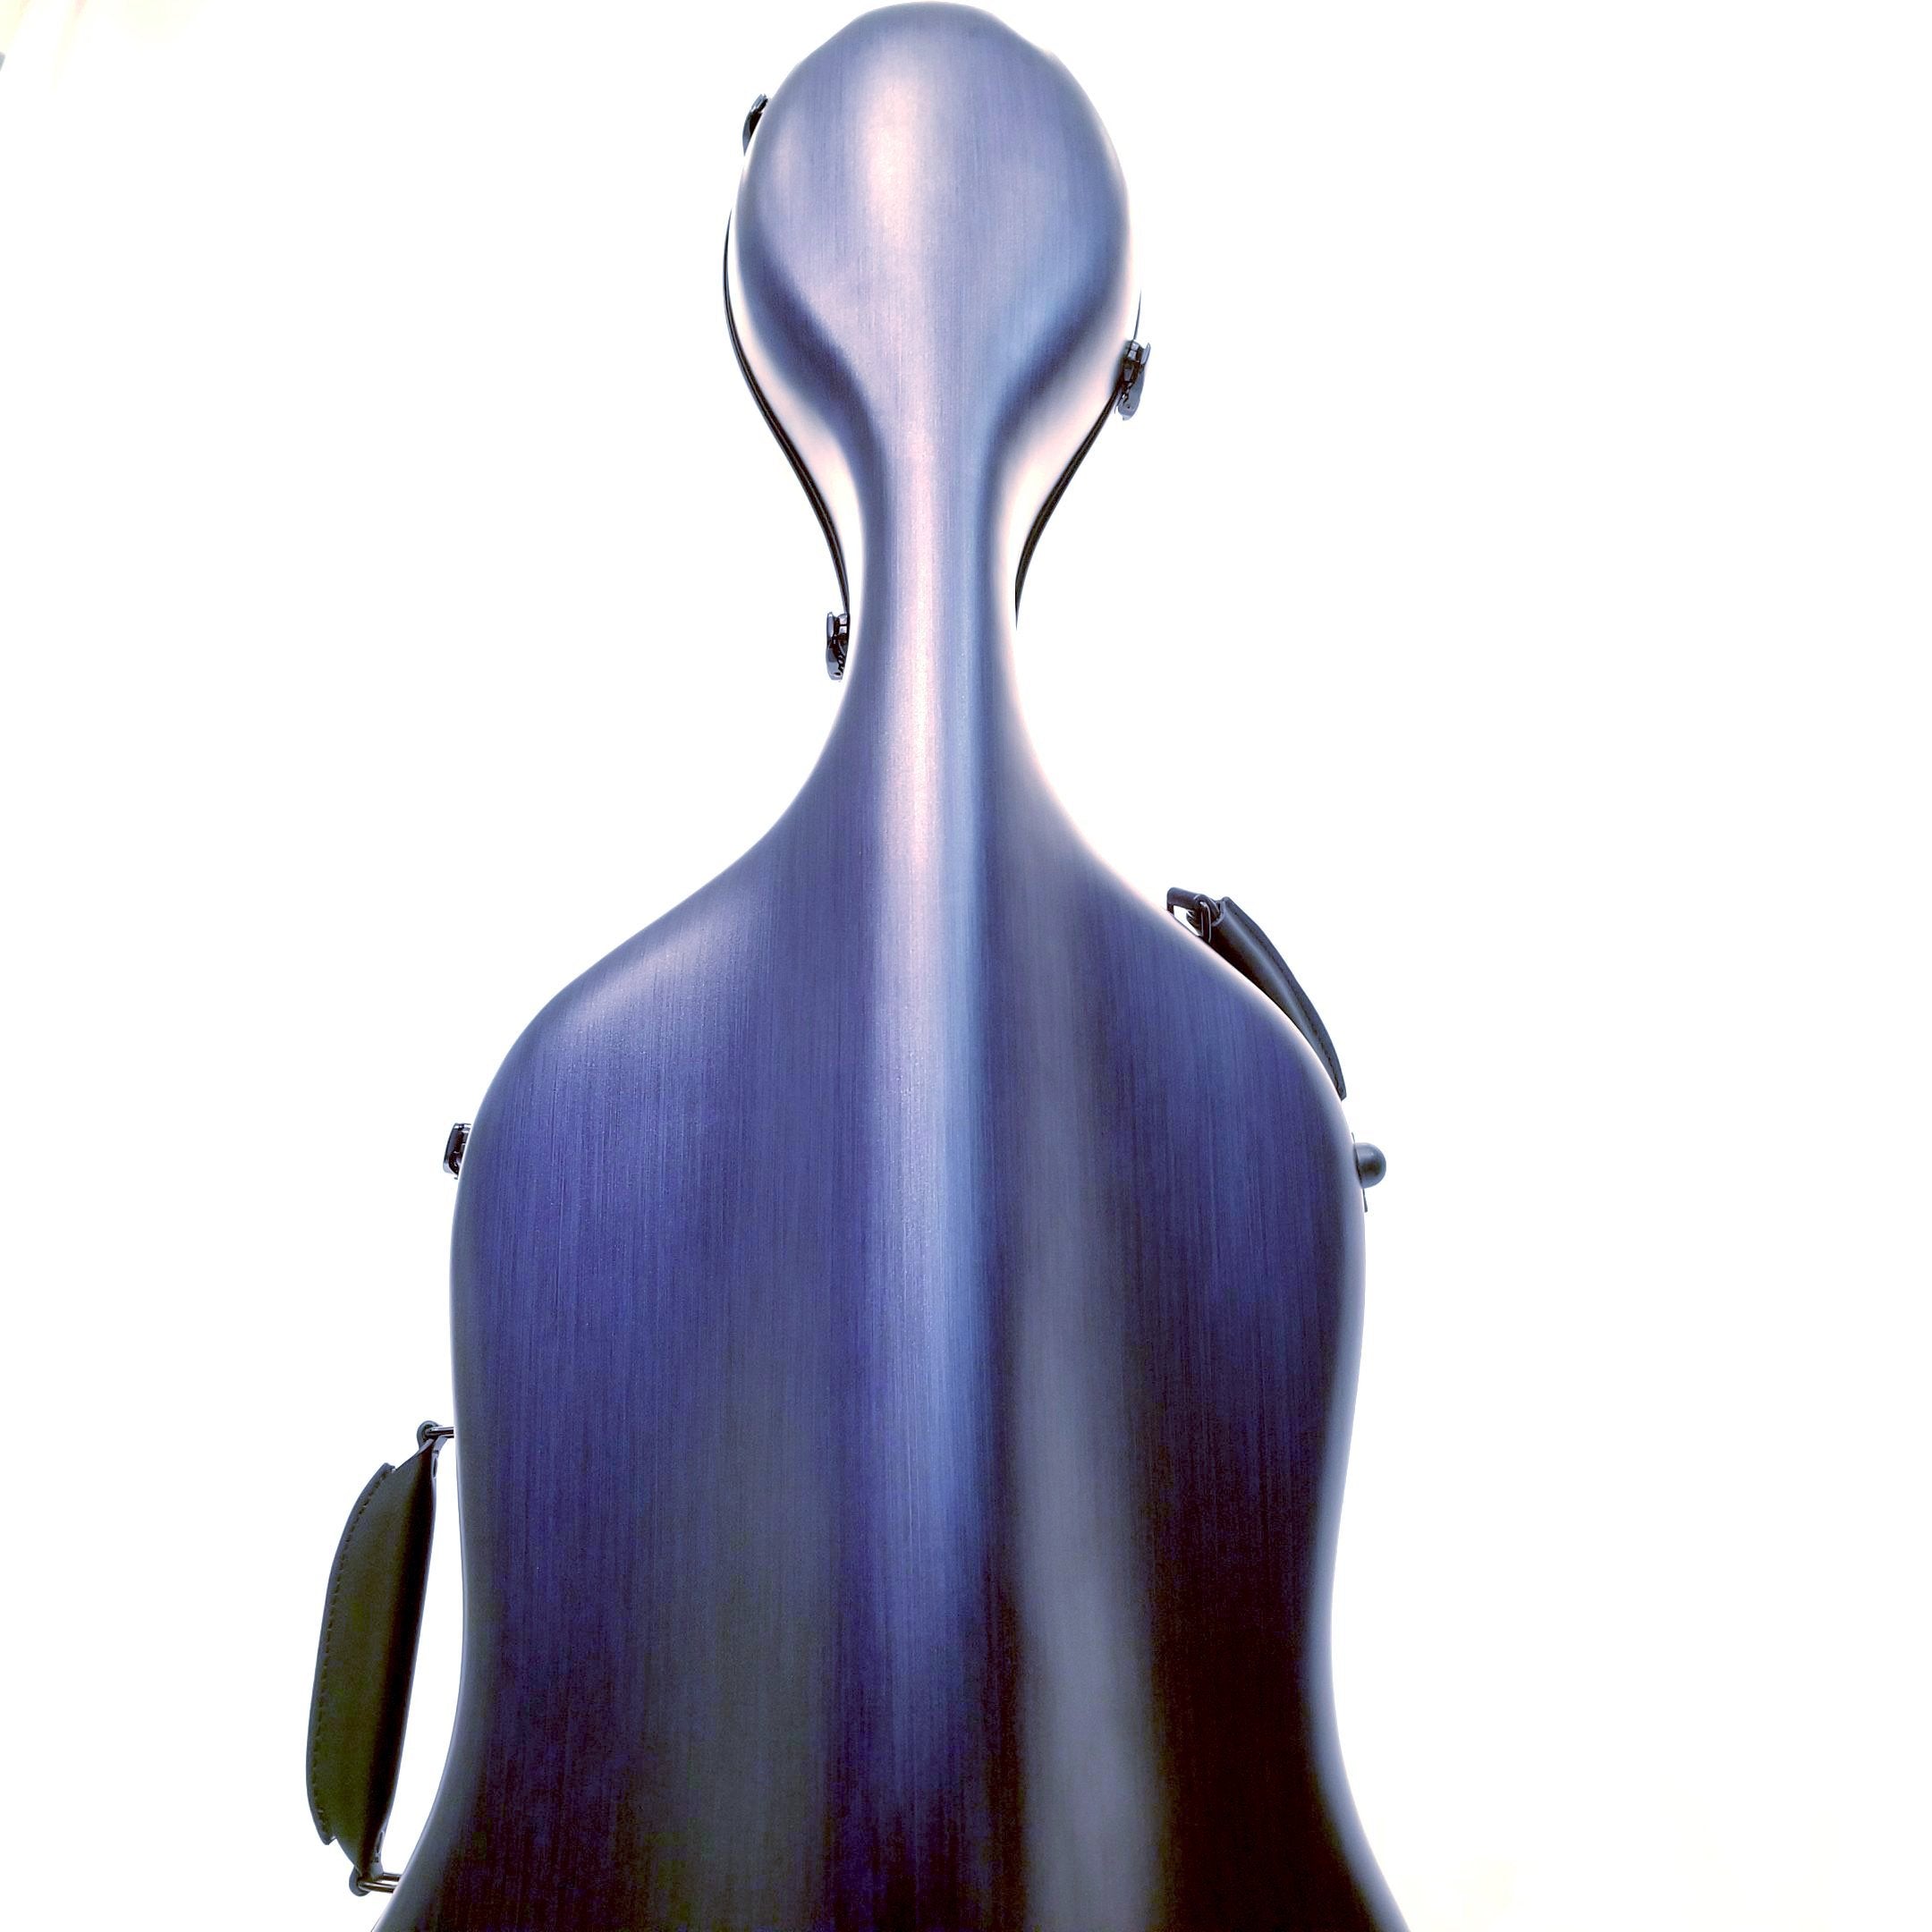 4/4 Cello Case - Polycarbonate Model